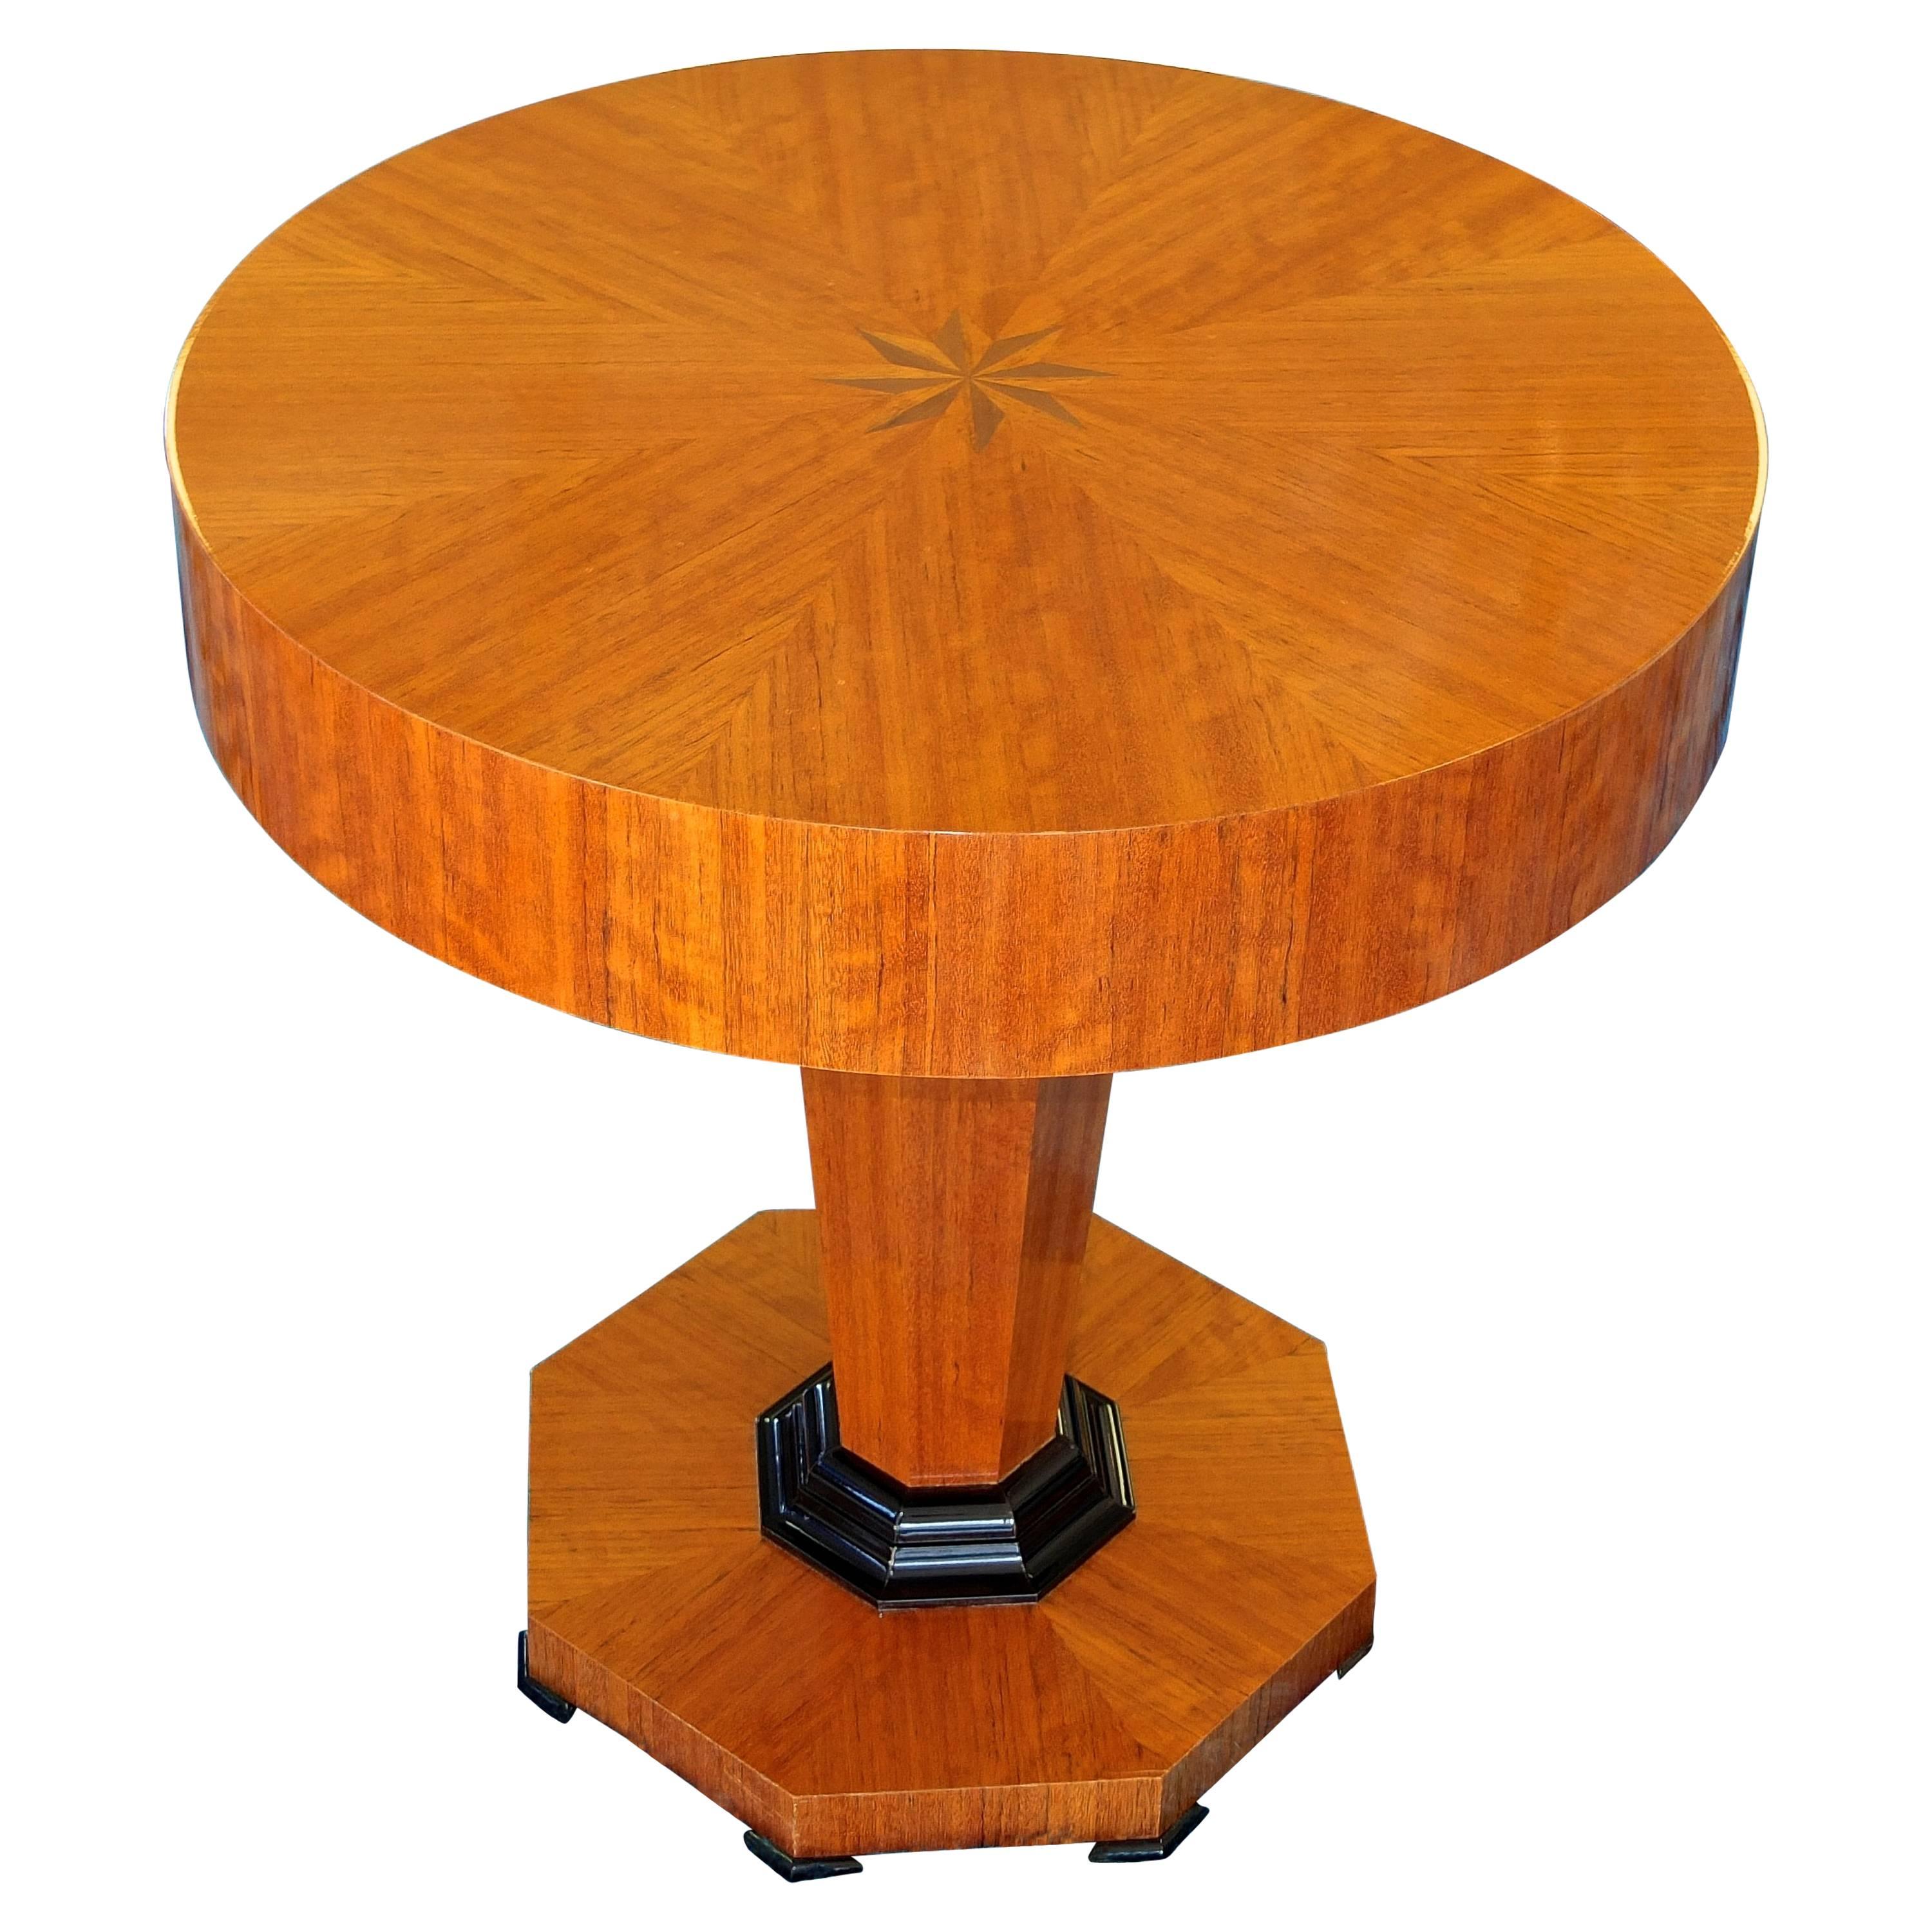 Studio Craft Tropical Olive Wood Pedestal Tisch von Gregg Lipton